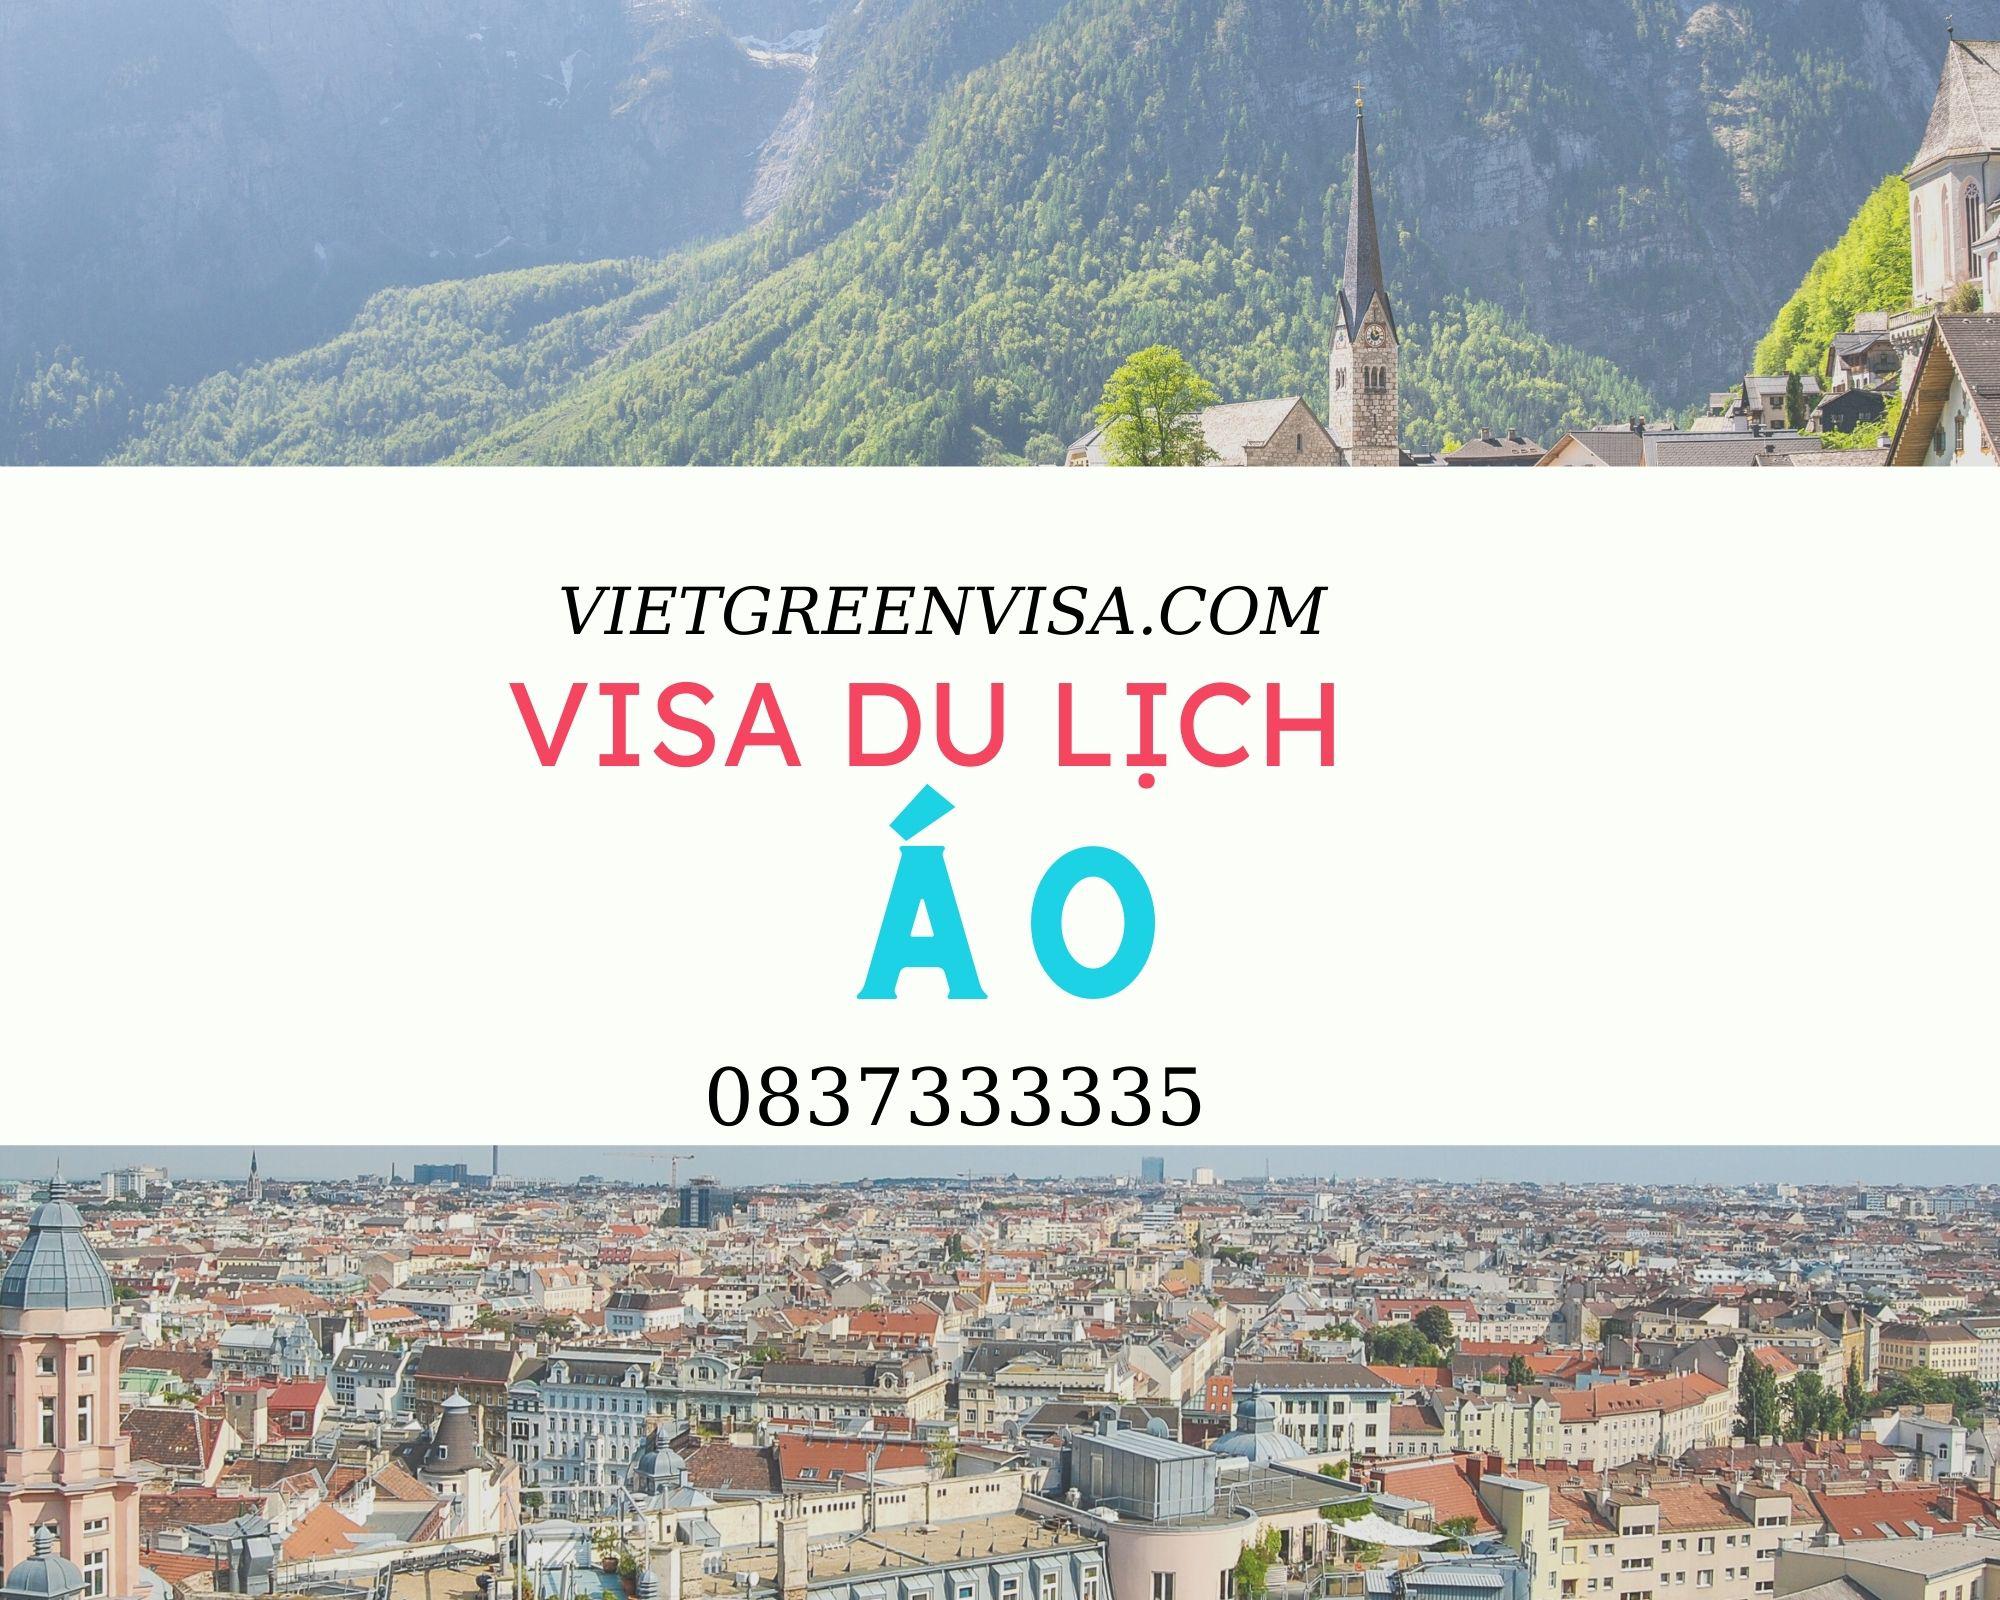 Hỗ trợ tư vấn xin visa du lịch Áo trọn gói